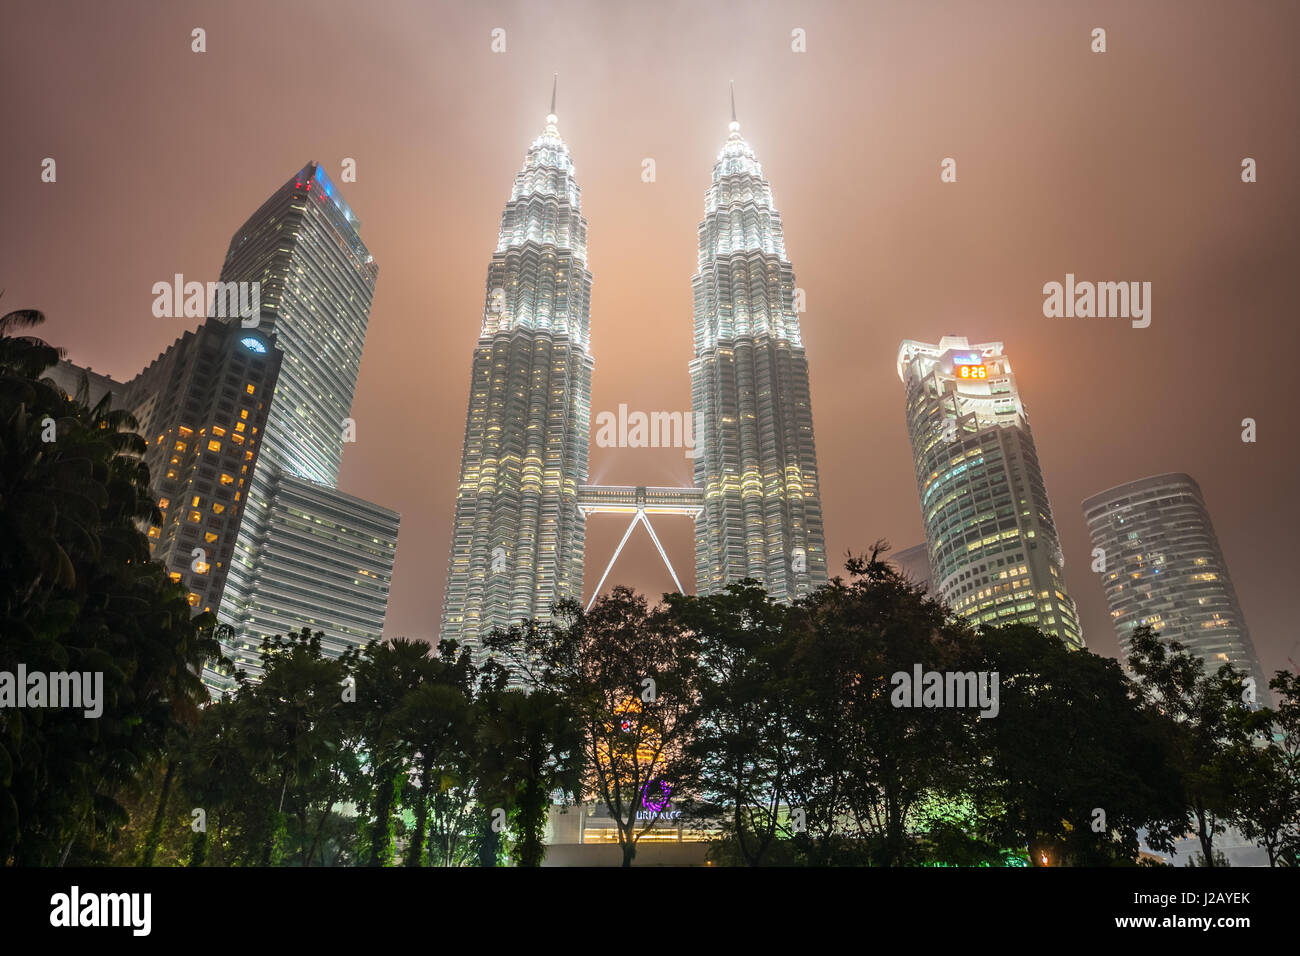 Petronas Twin Towers a notte nebuloso. Con 452 metri, le Petronas Twin Towers sono tra i più alti di due edifici gemelli nel mondo. Kuala Lumpur, Malesia. Foto Stock